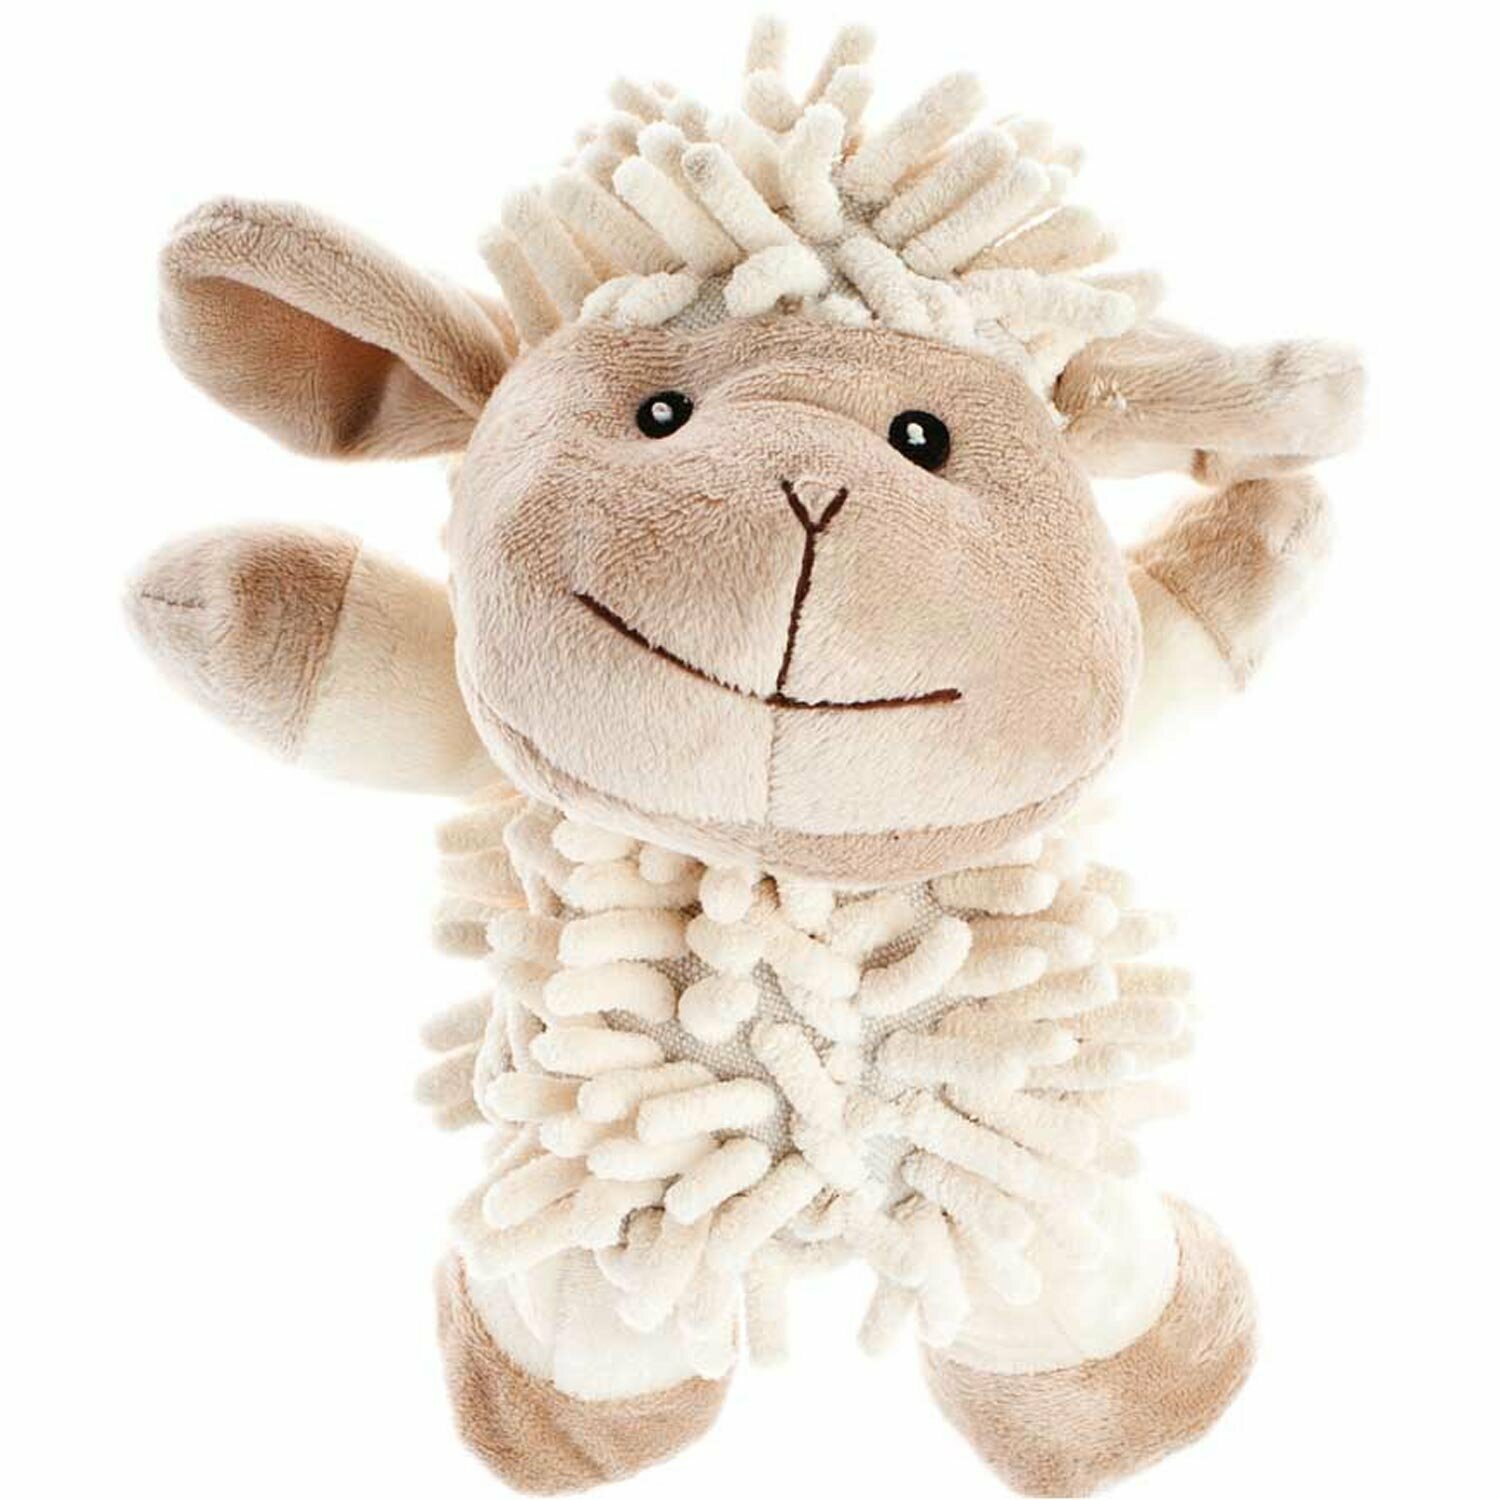 Sheep dog toy